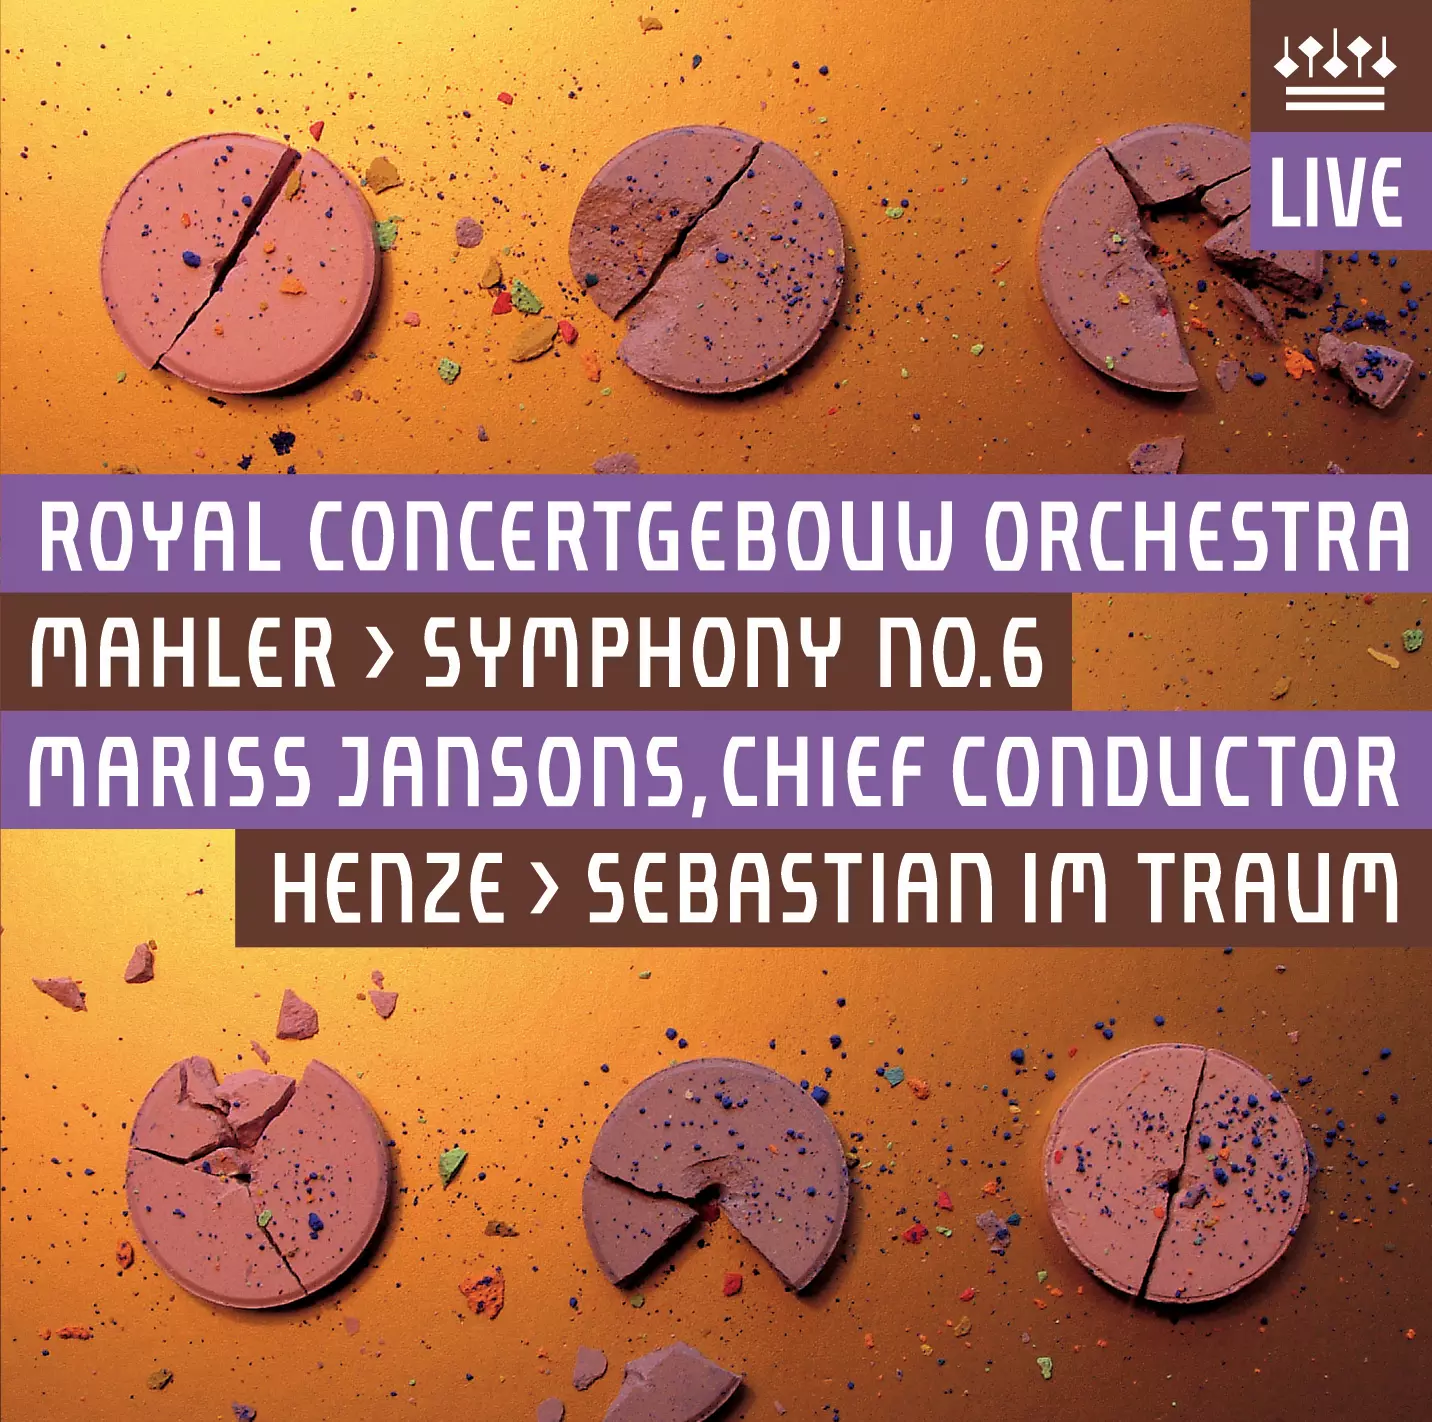 Mahler: Symphony 6 and Henze: Sebastian im Traum